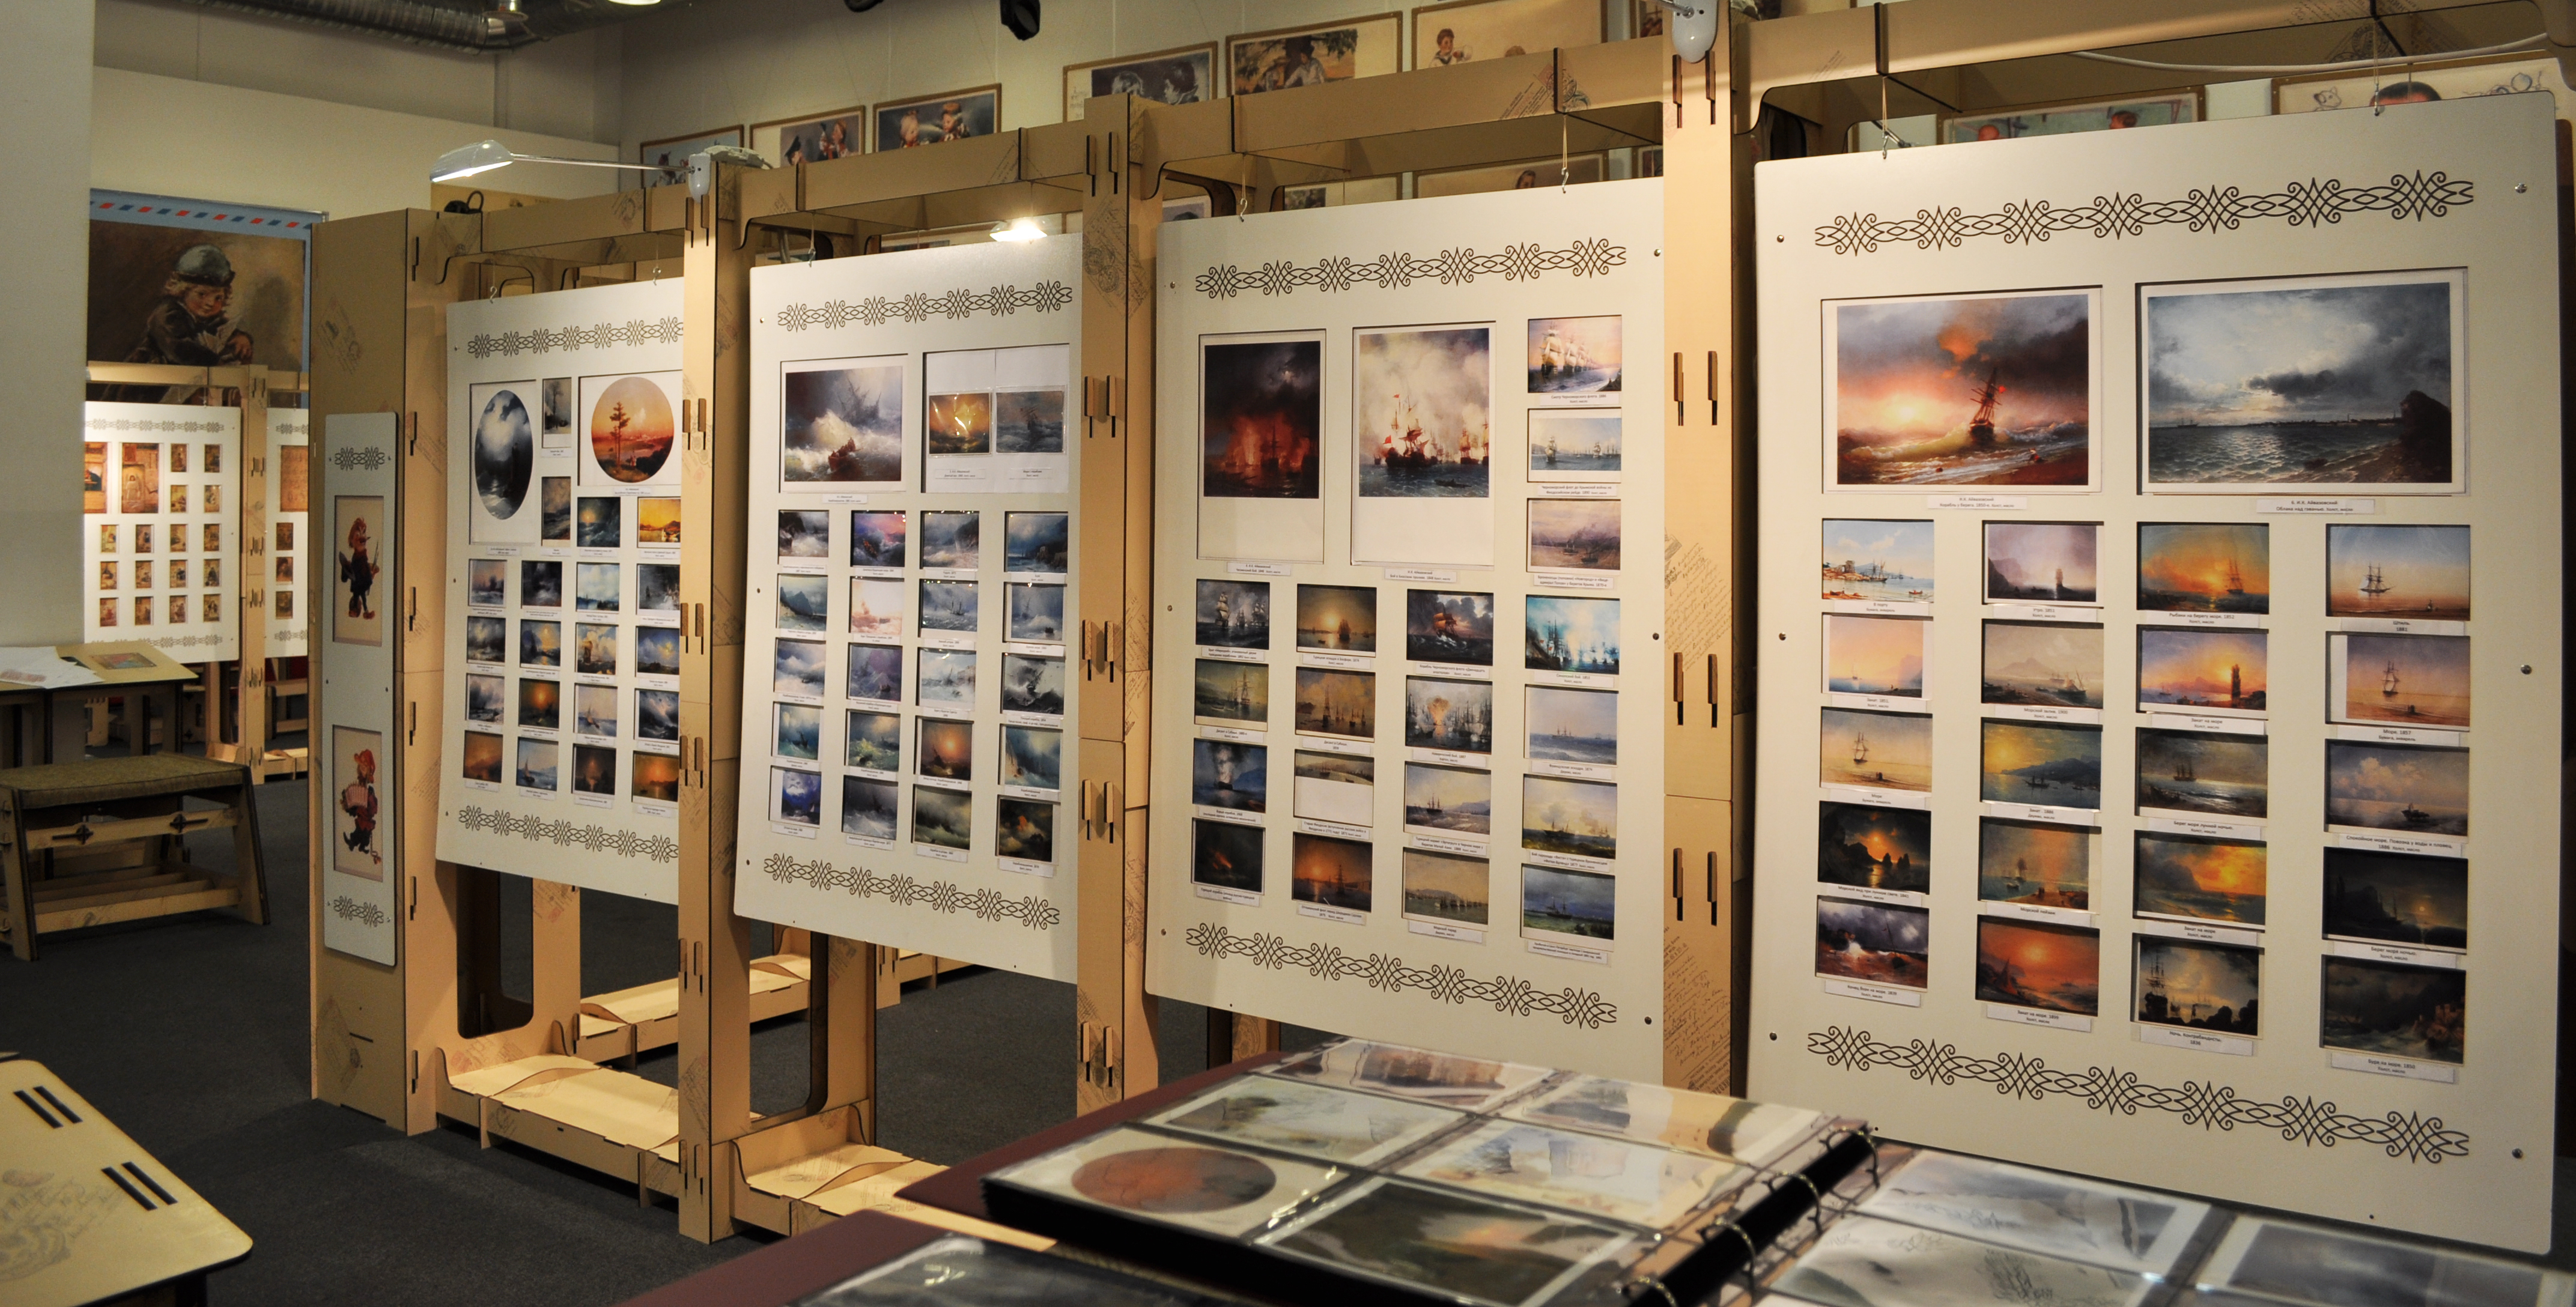 Более 800 работ Ивана Айвазовского, запечатленных в открытках можно увидеть в Детском музее истории русской открытки